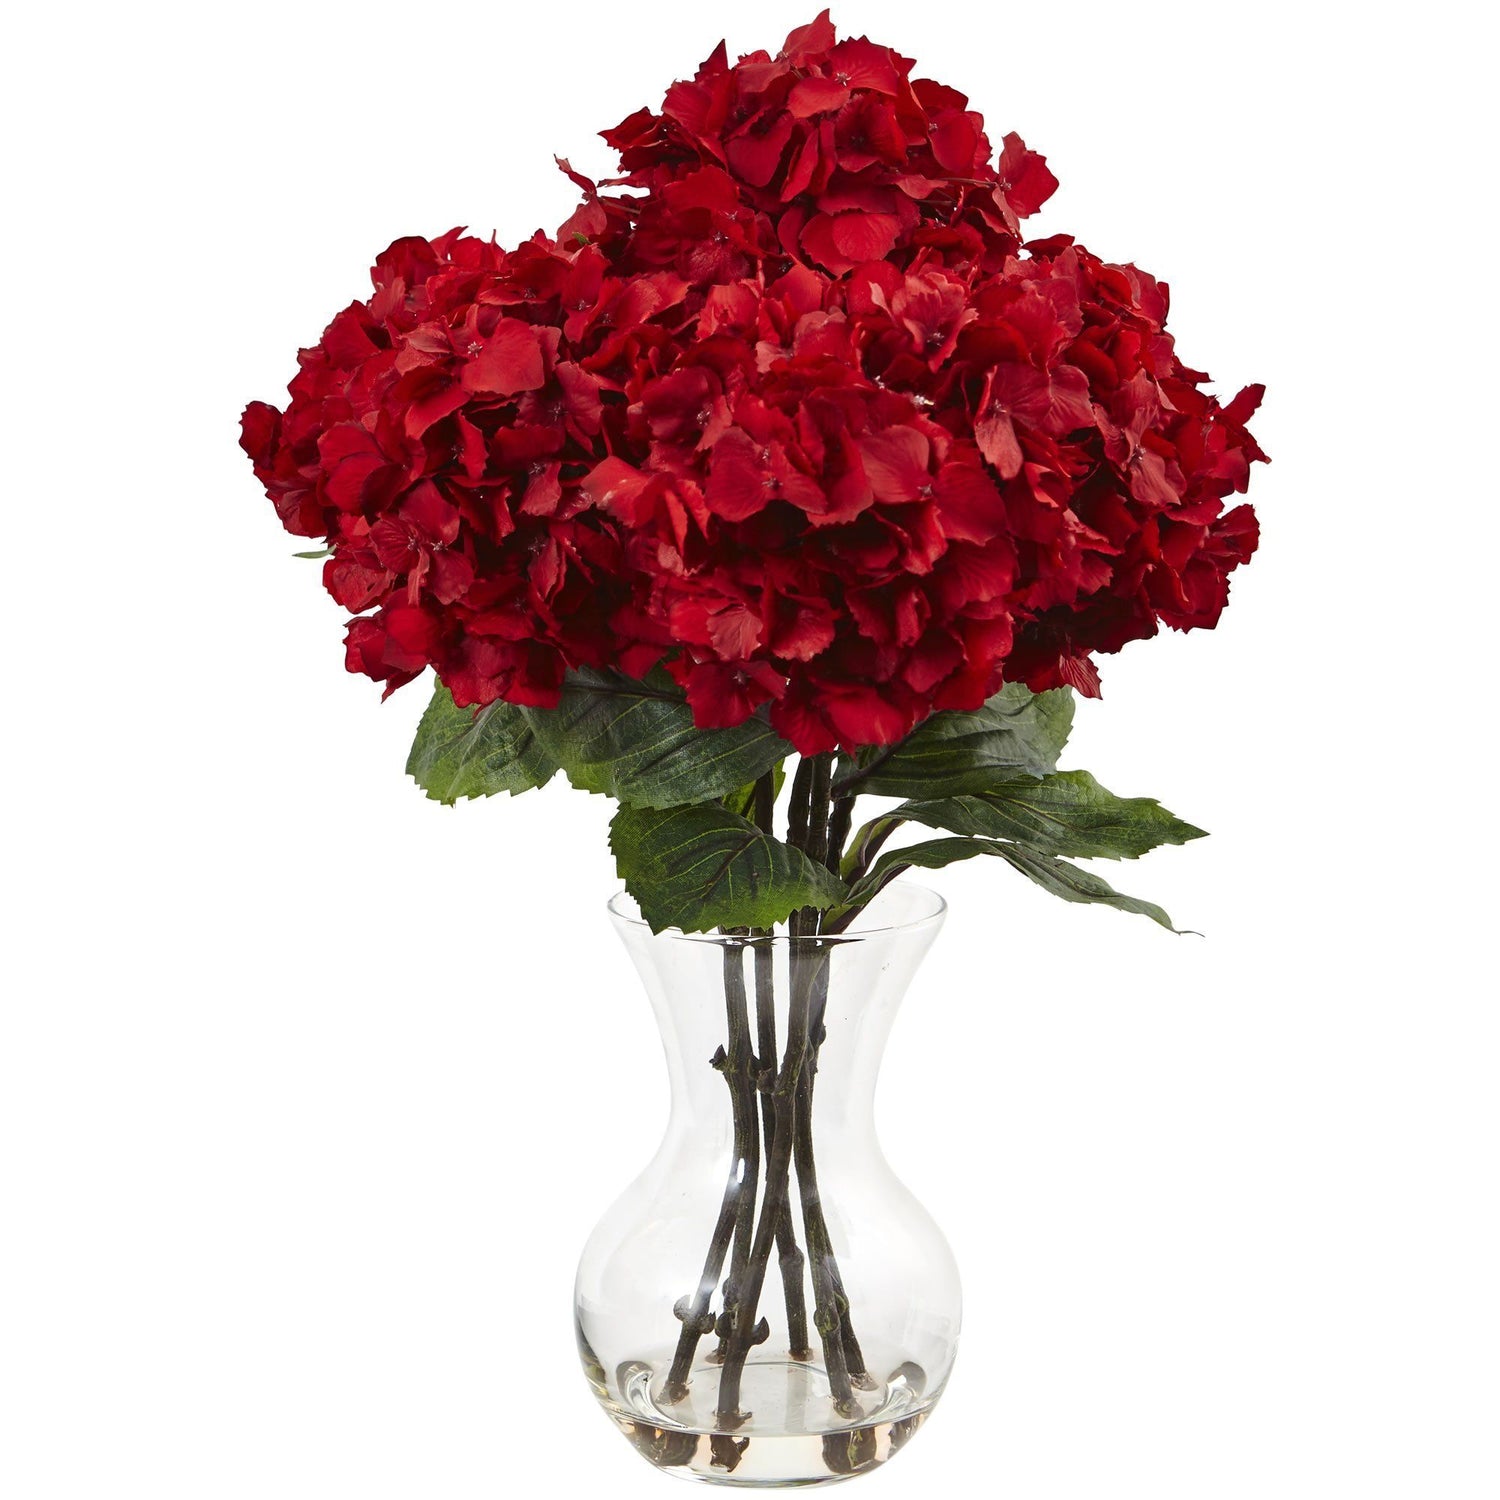 18" Artificial Red Hydrangea with Vase Silk Flower Arrangement"